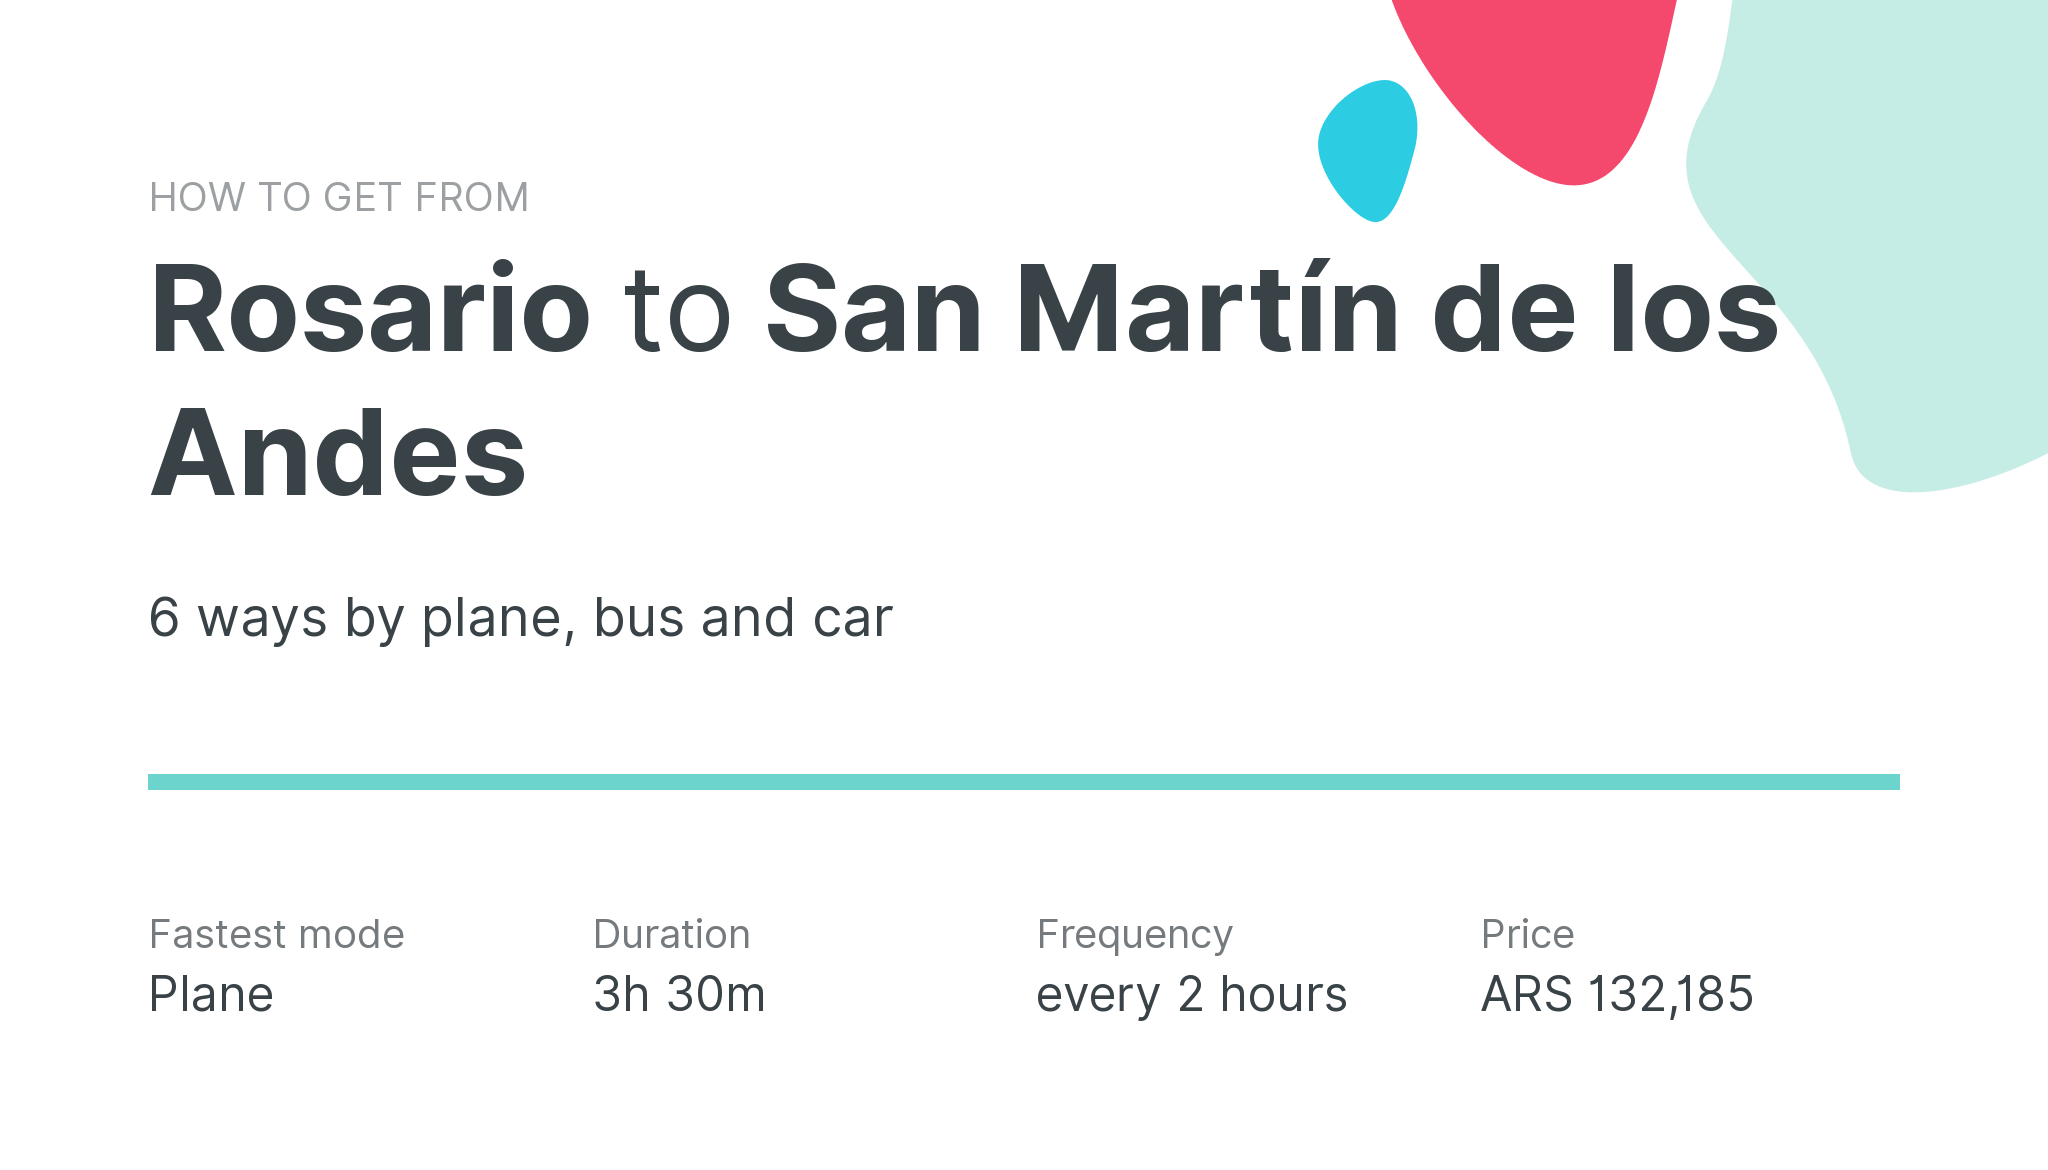 How do I get from Rosario to San Martín de los Andes